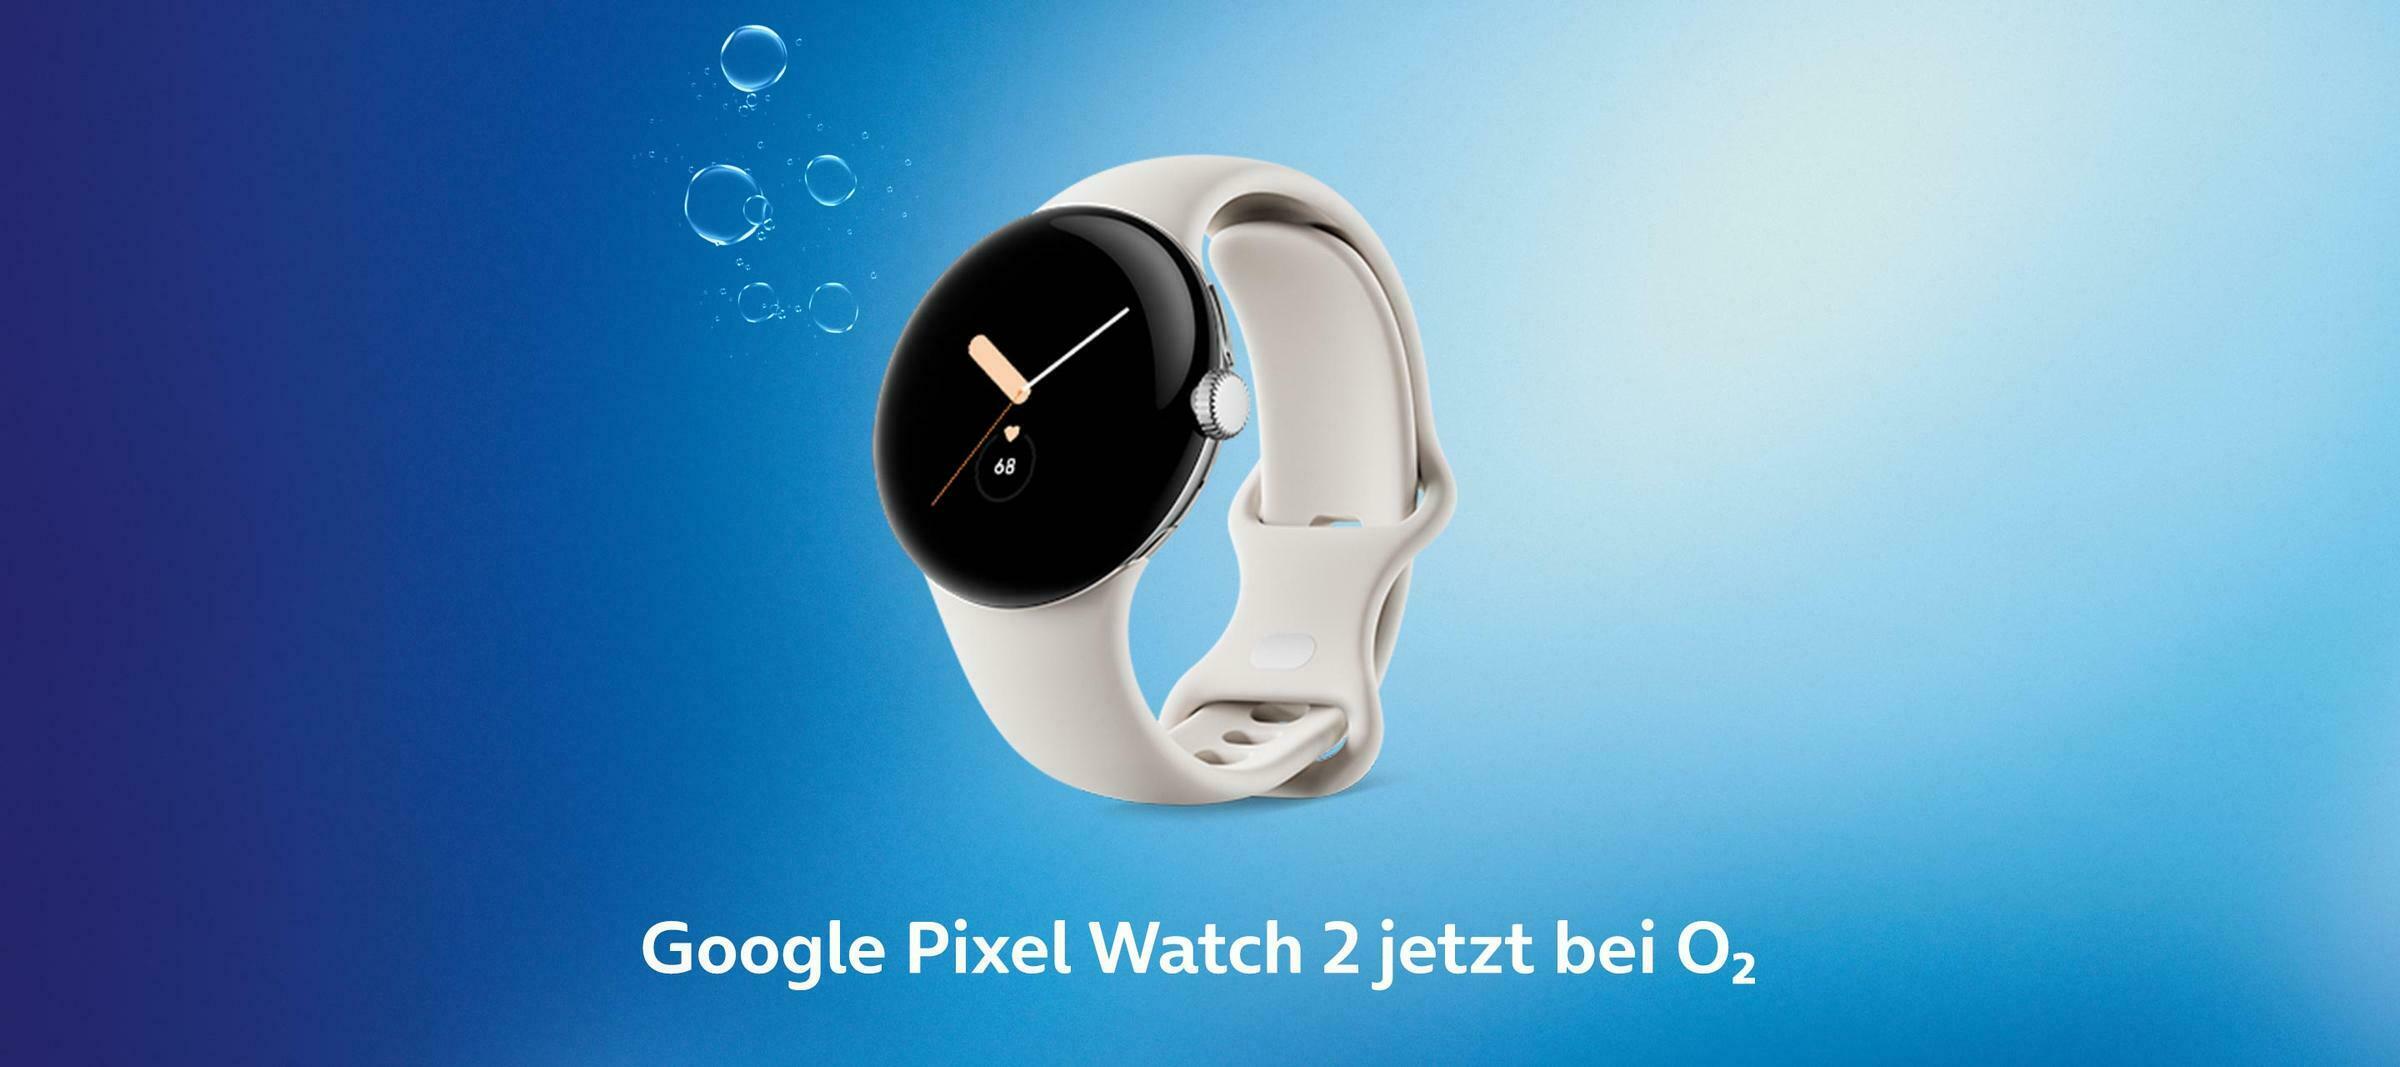 Die Google Pixel Watch 2 LTE - deine neue Smartwatch bei O₂